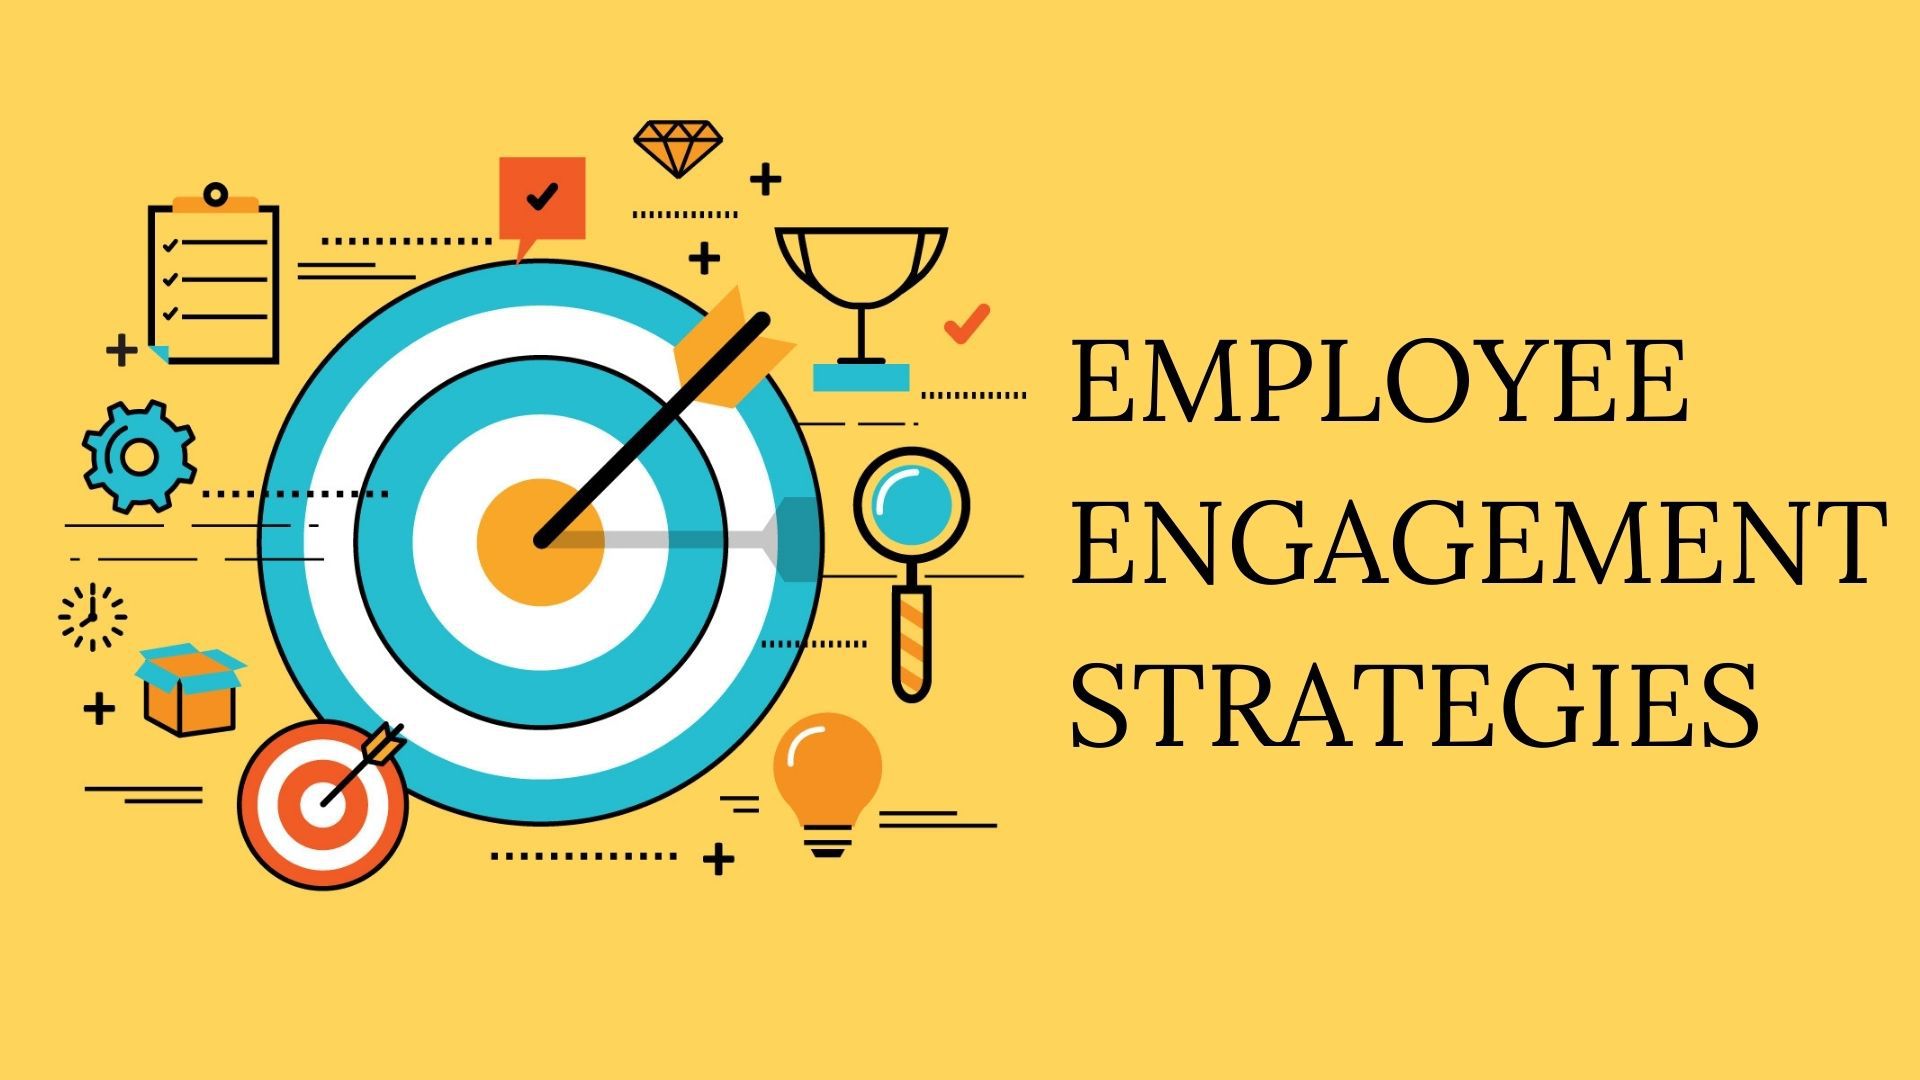 Strategije za povećanje angažmana zaposlenika